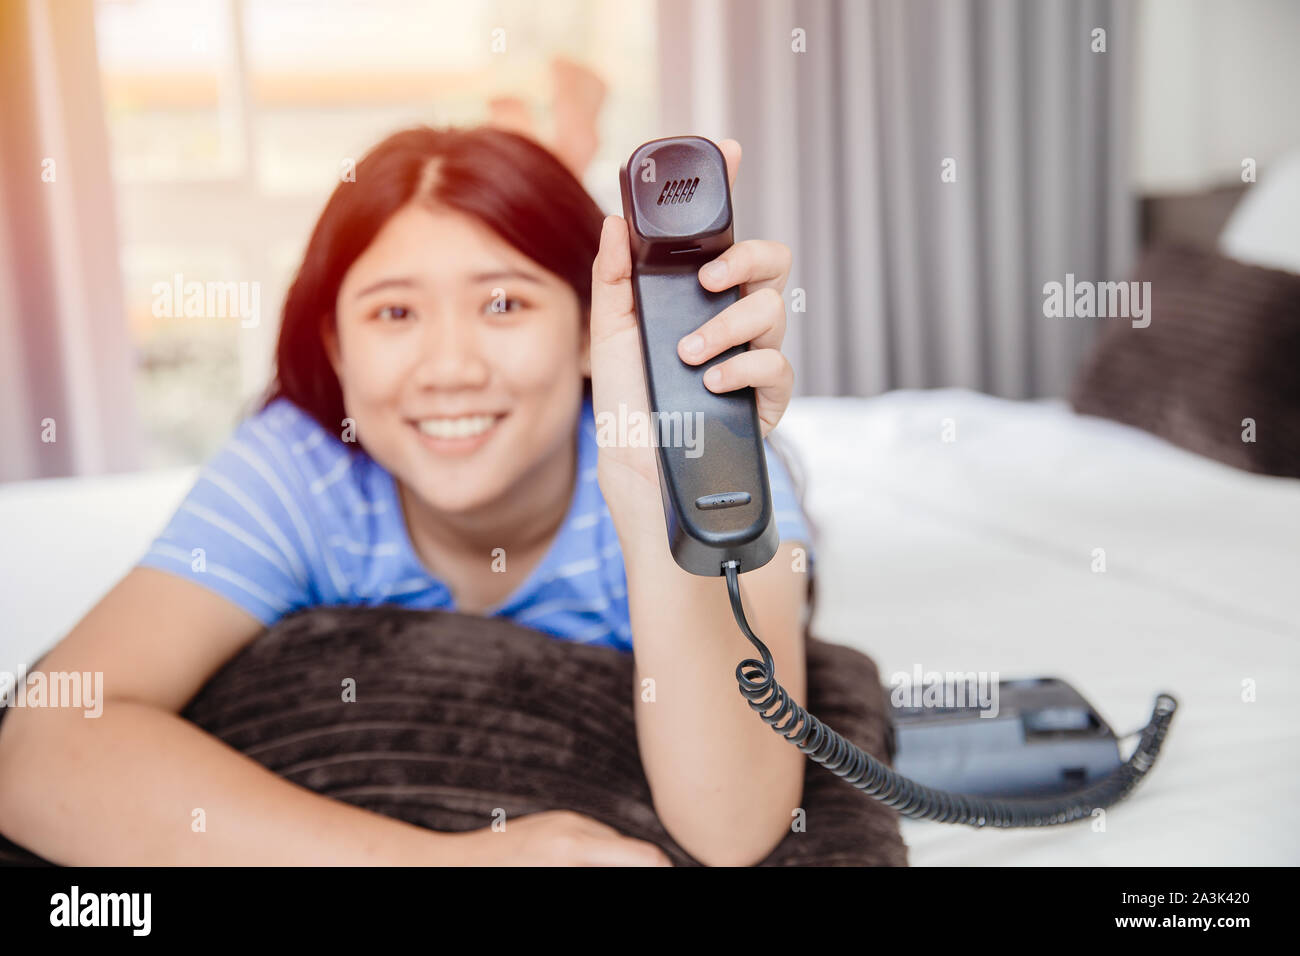 Asiatische Mädchen jugendlich mit Festnetz anrufen glückliches Lächeln eindrucksvollen mit Customer Care Support Konzept. Stockfoto